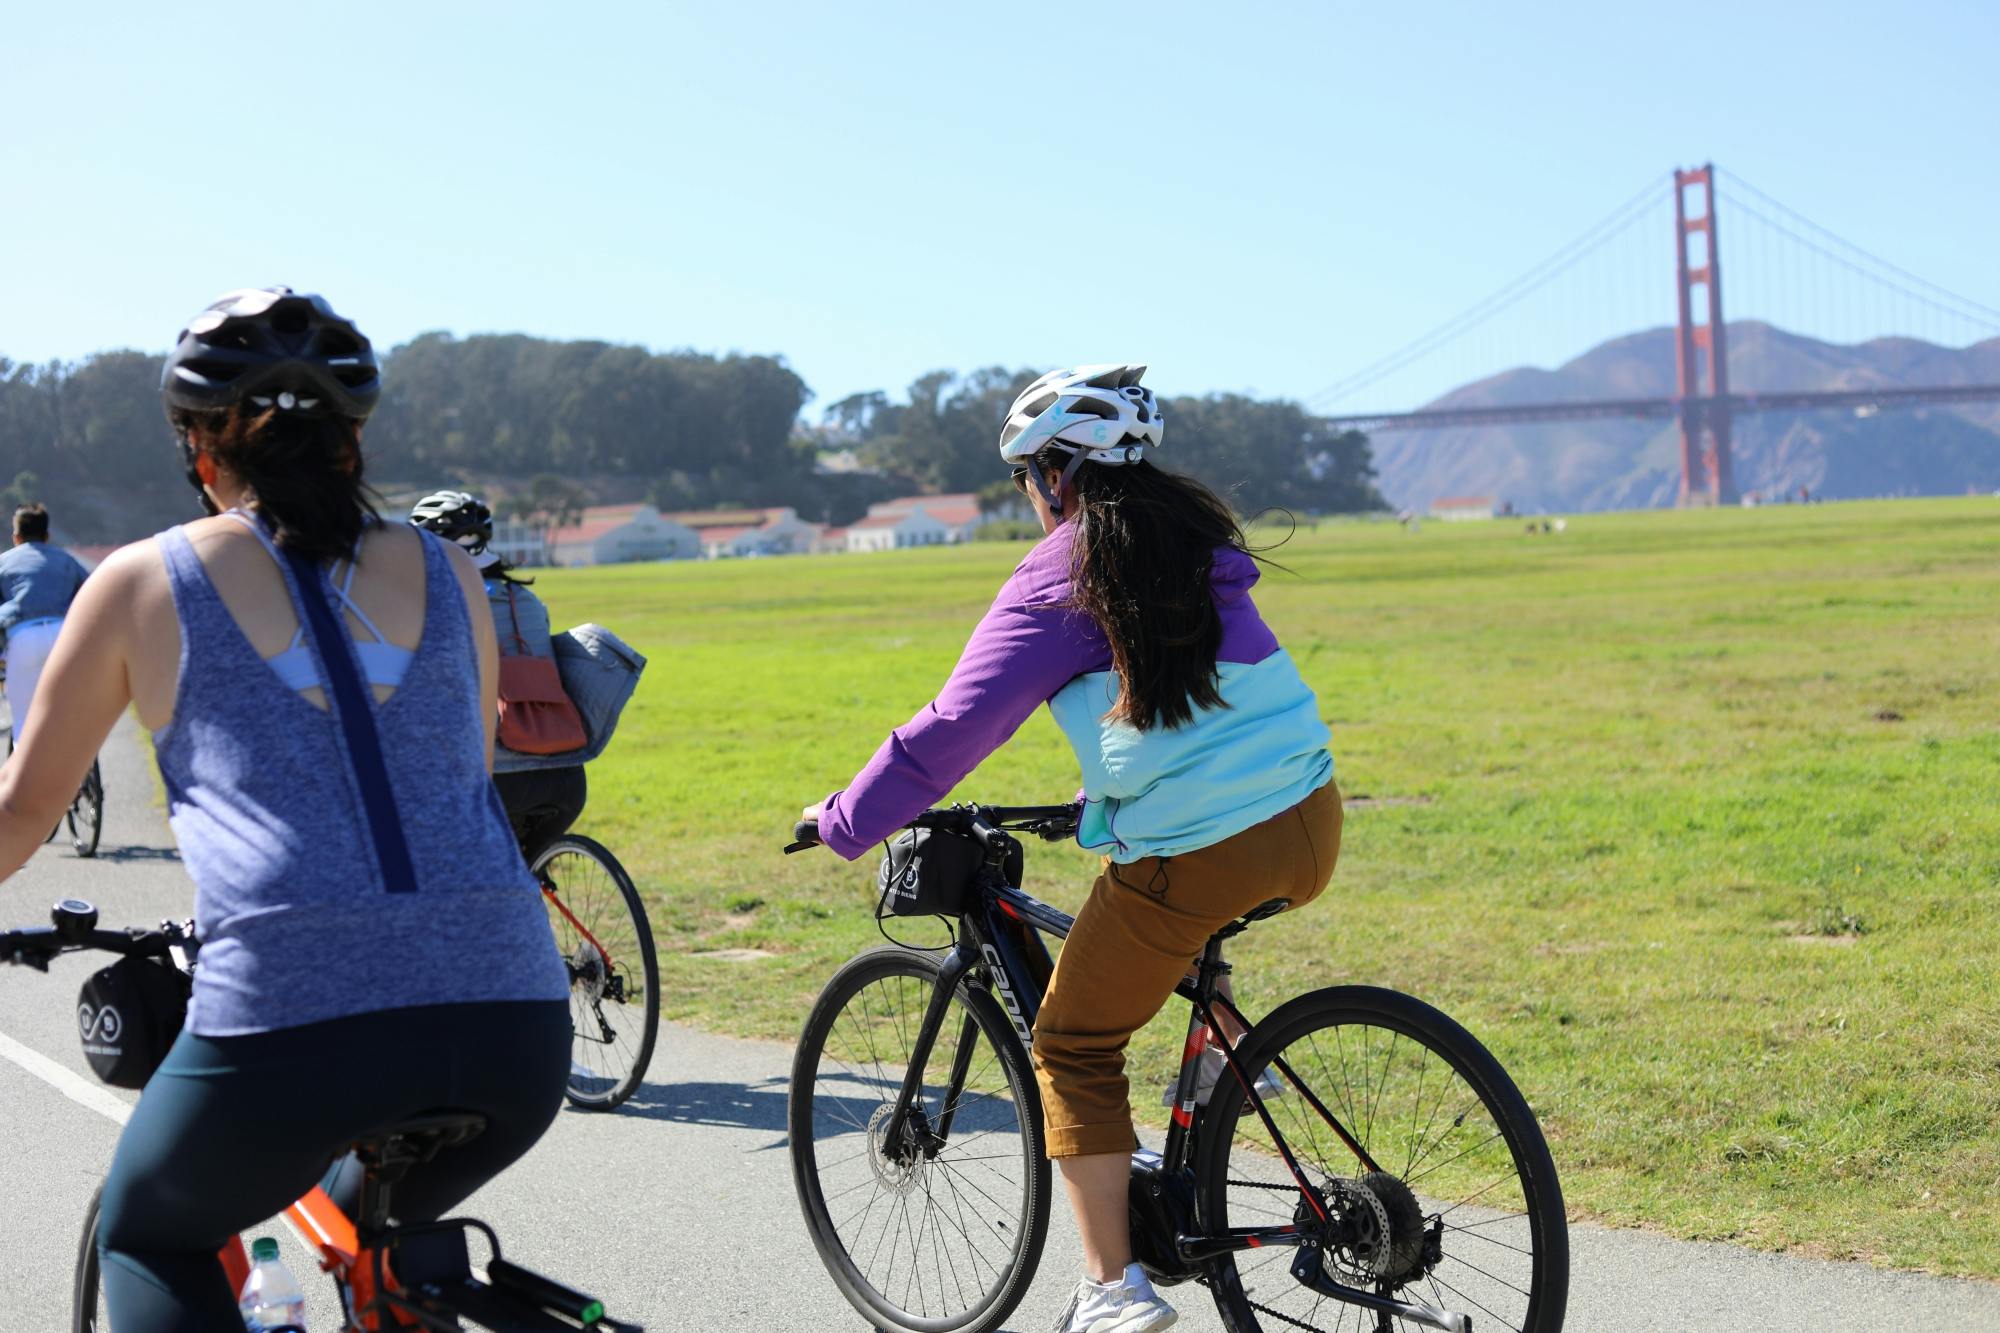 Highlights of Golden Gate Park guided bike tour Musement